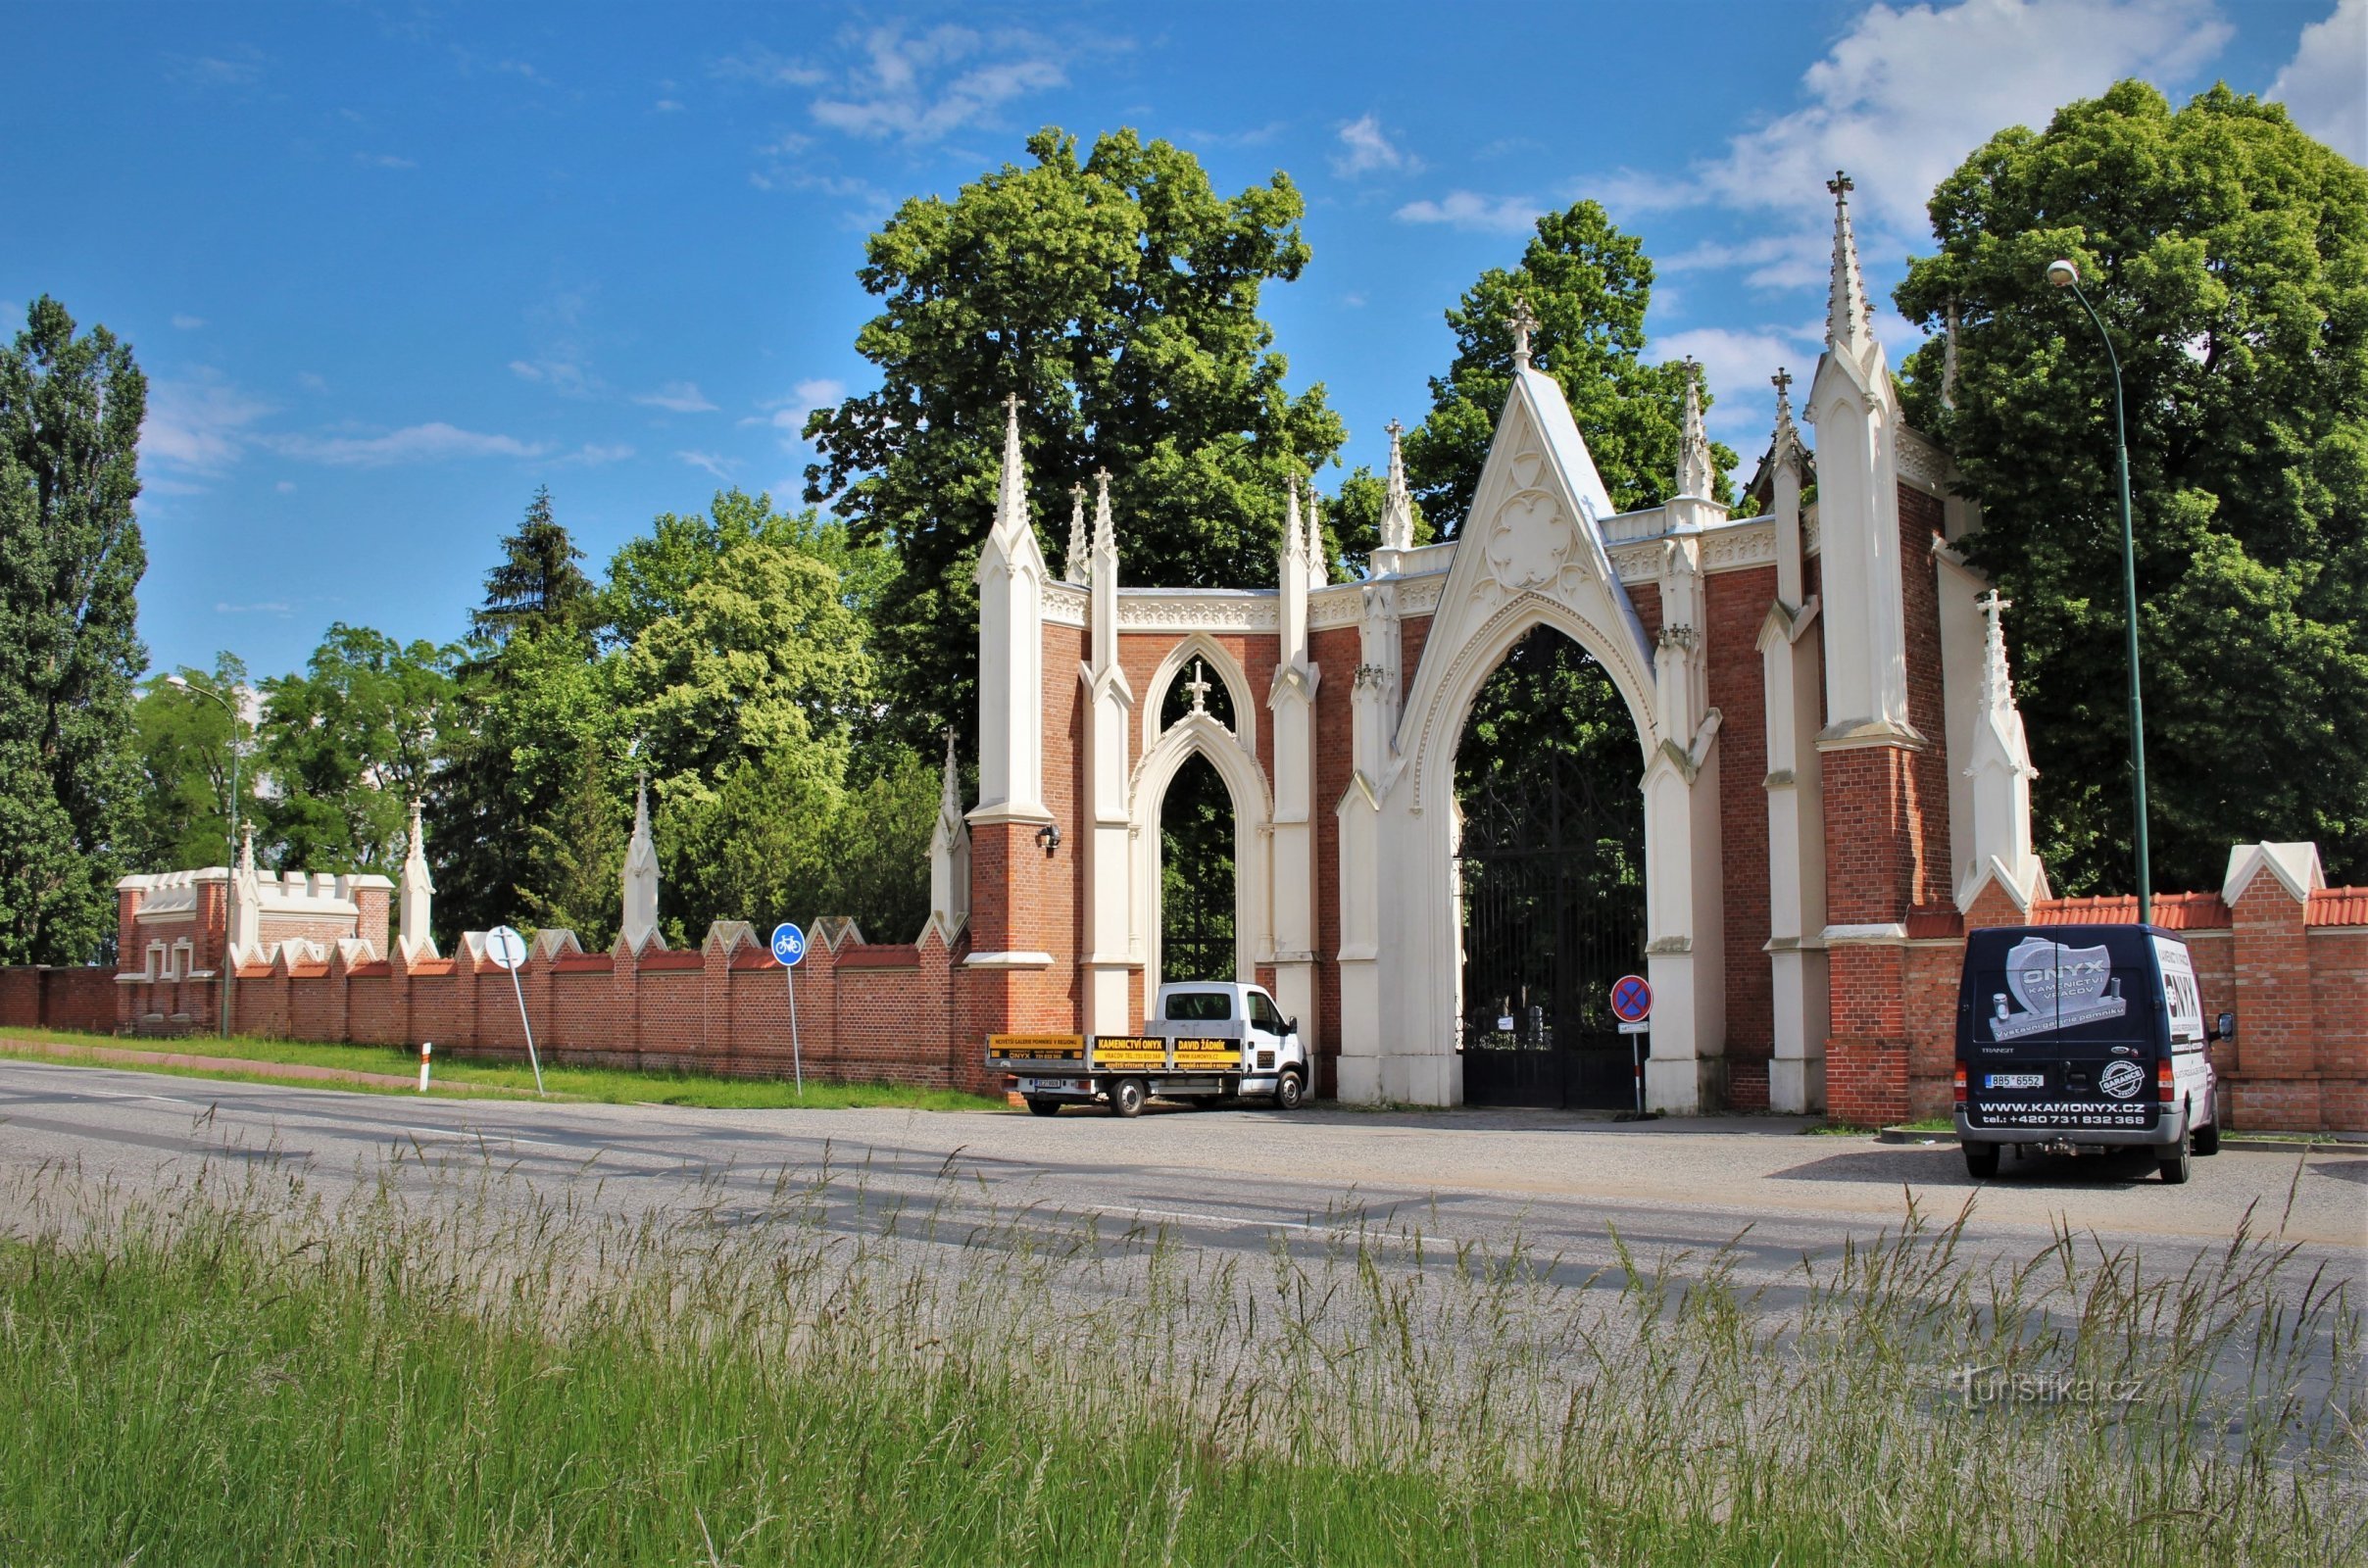 Puerta de entrada al cementerio con un muro